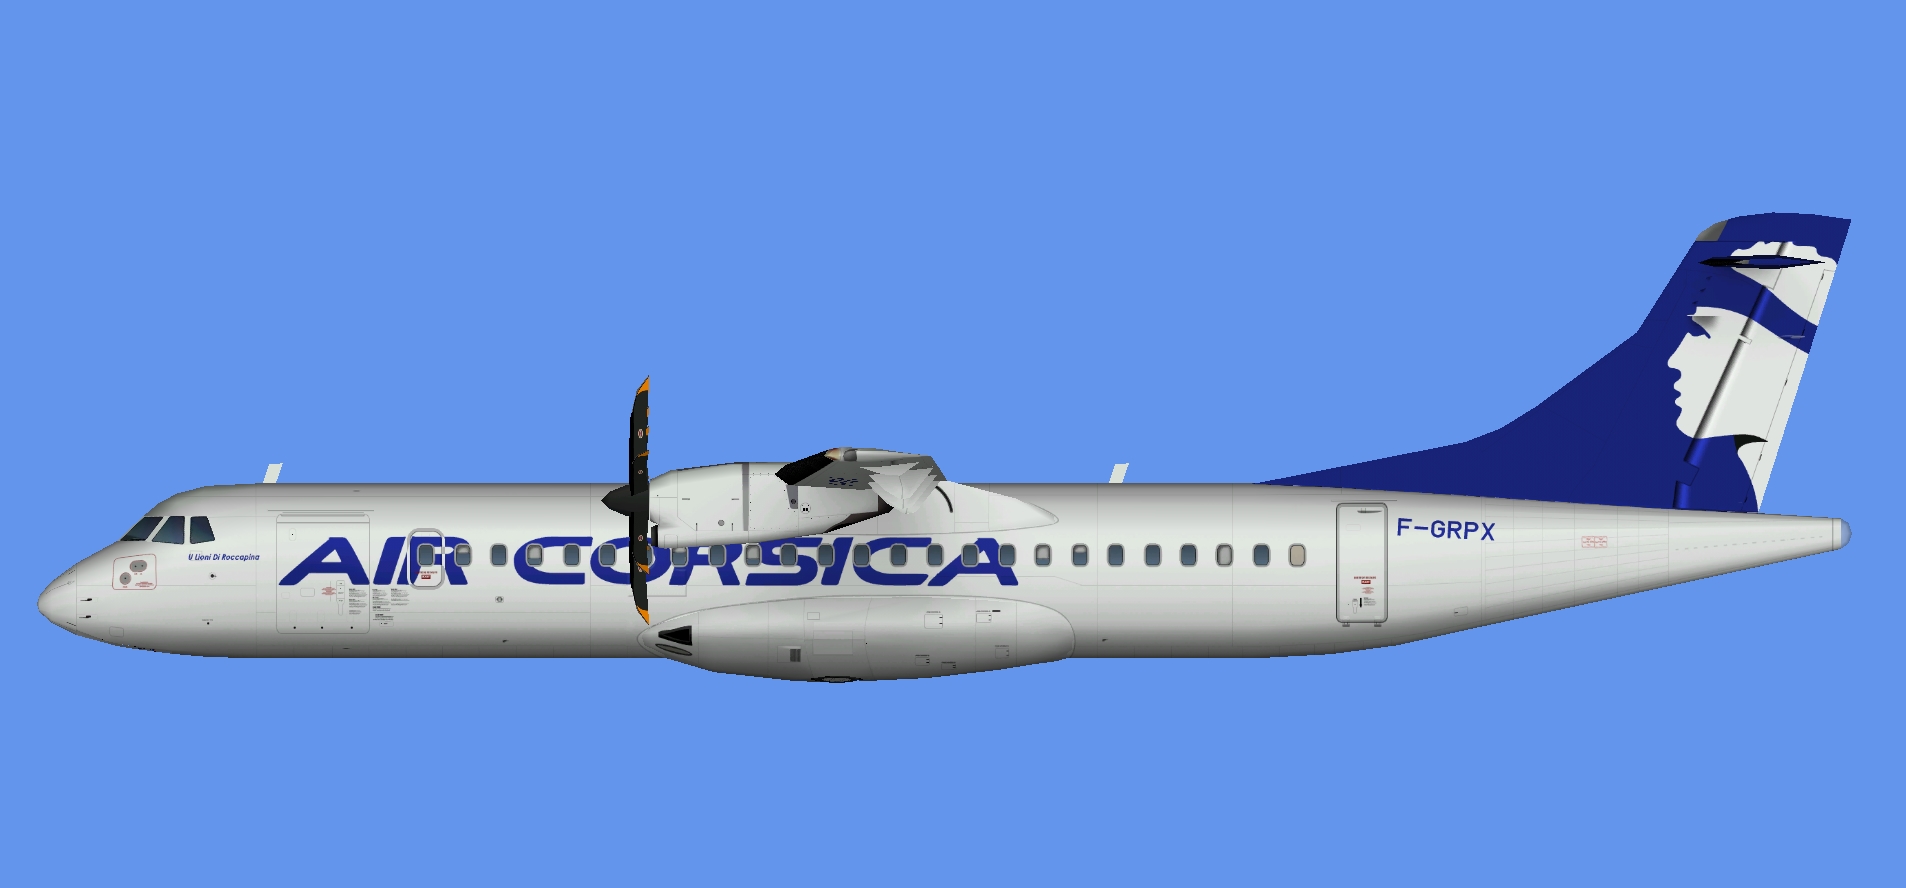 Air Corsica ATR 72-500